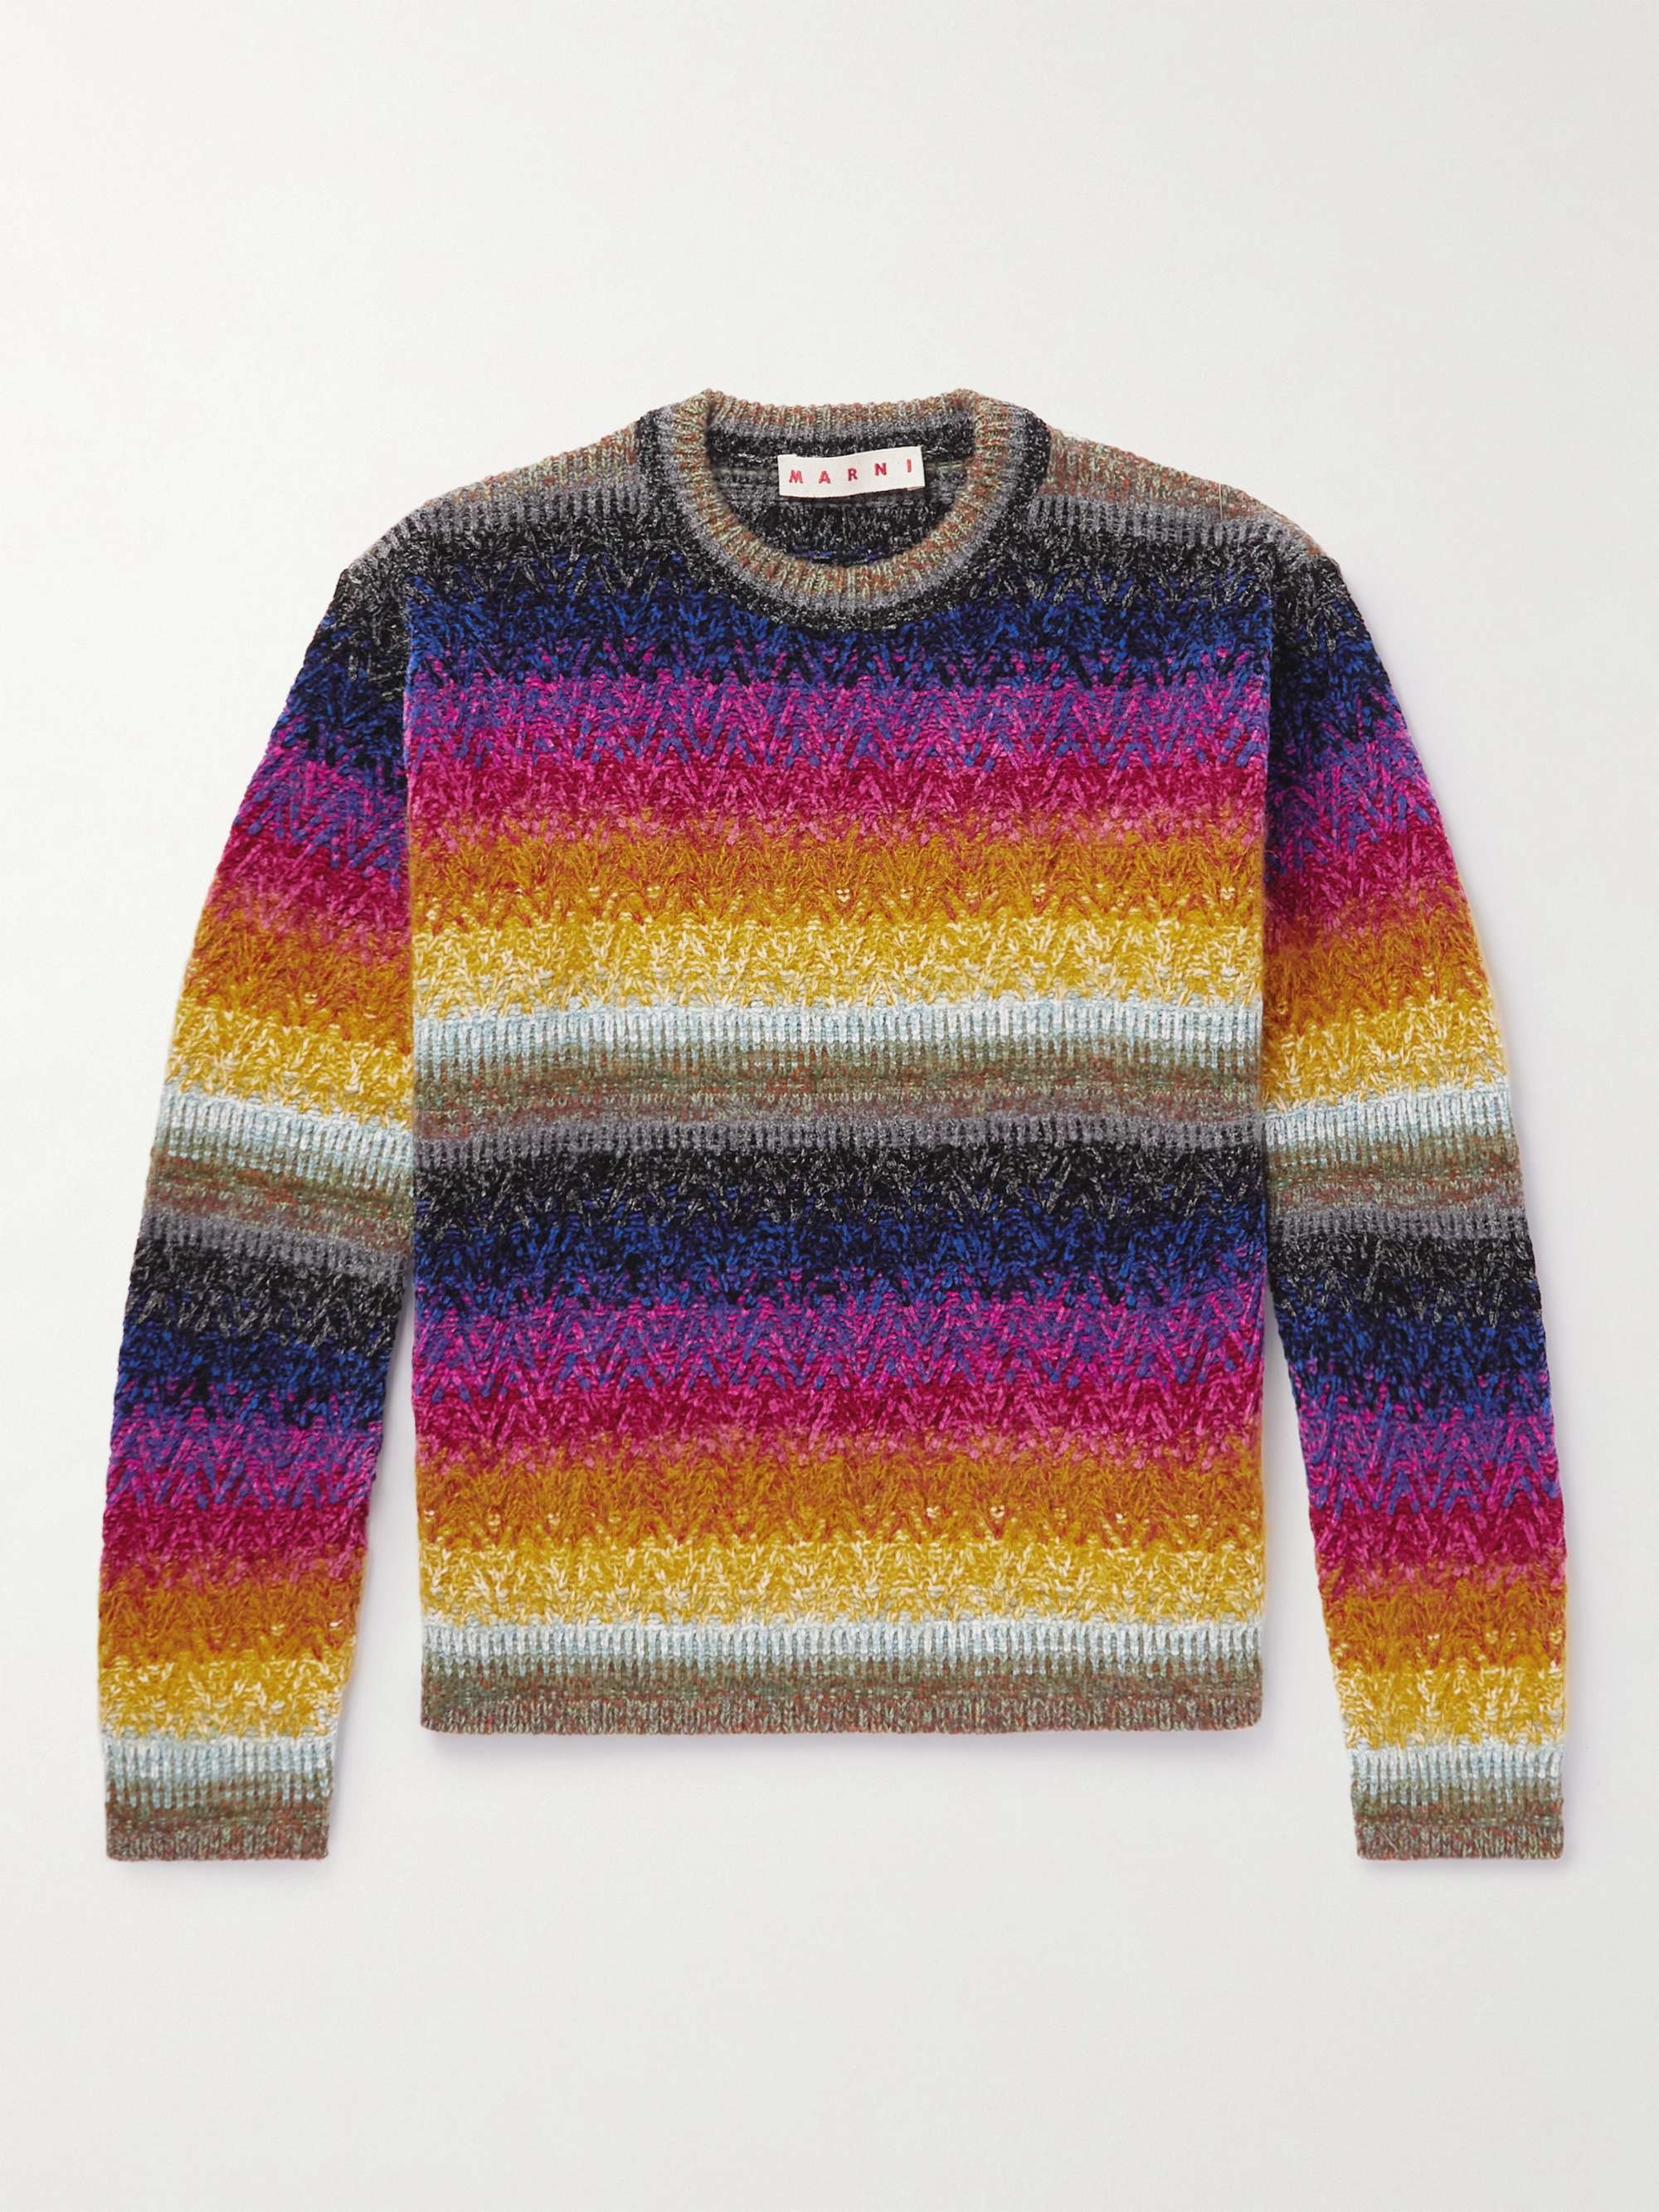 Striped Chenille Sweater